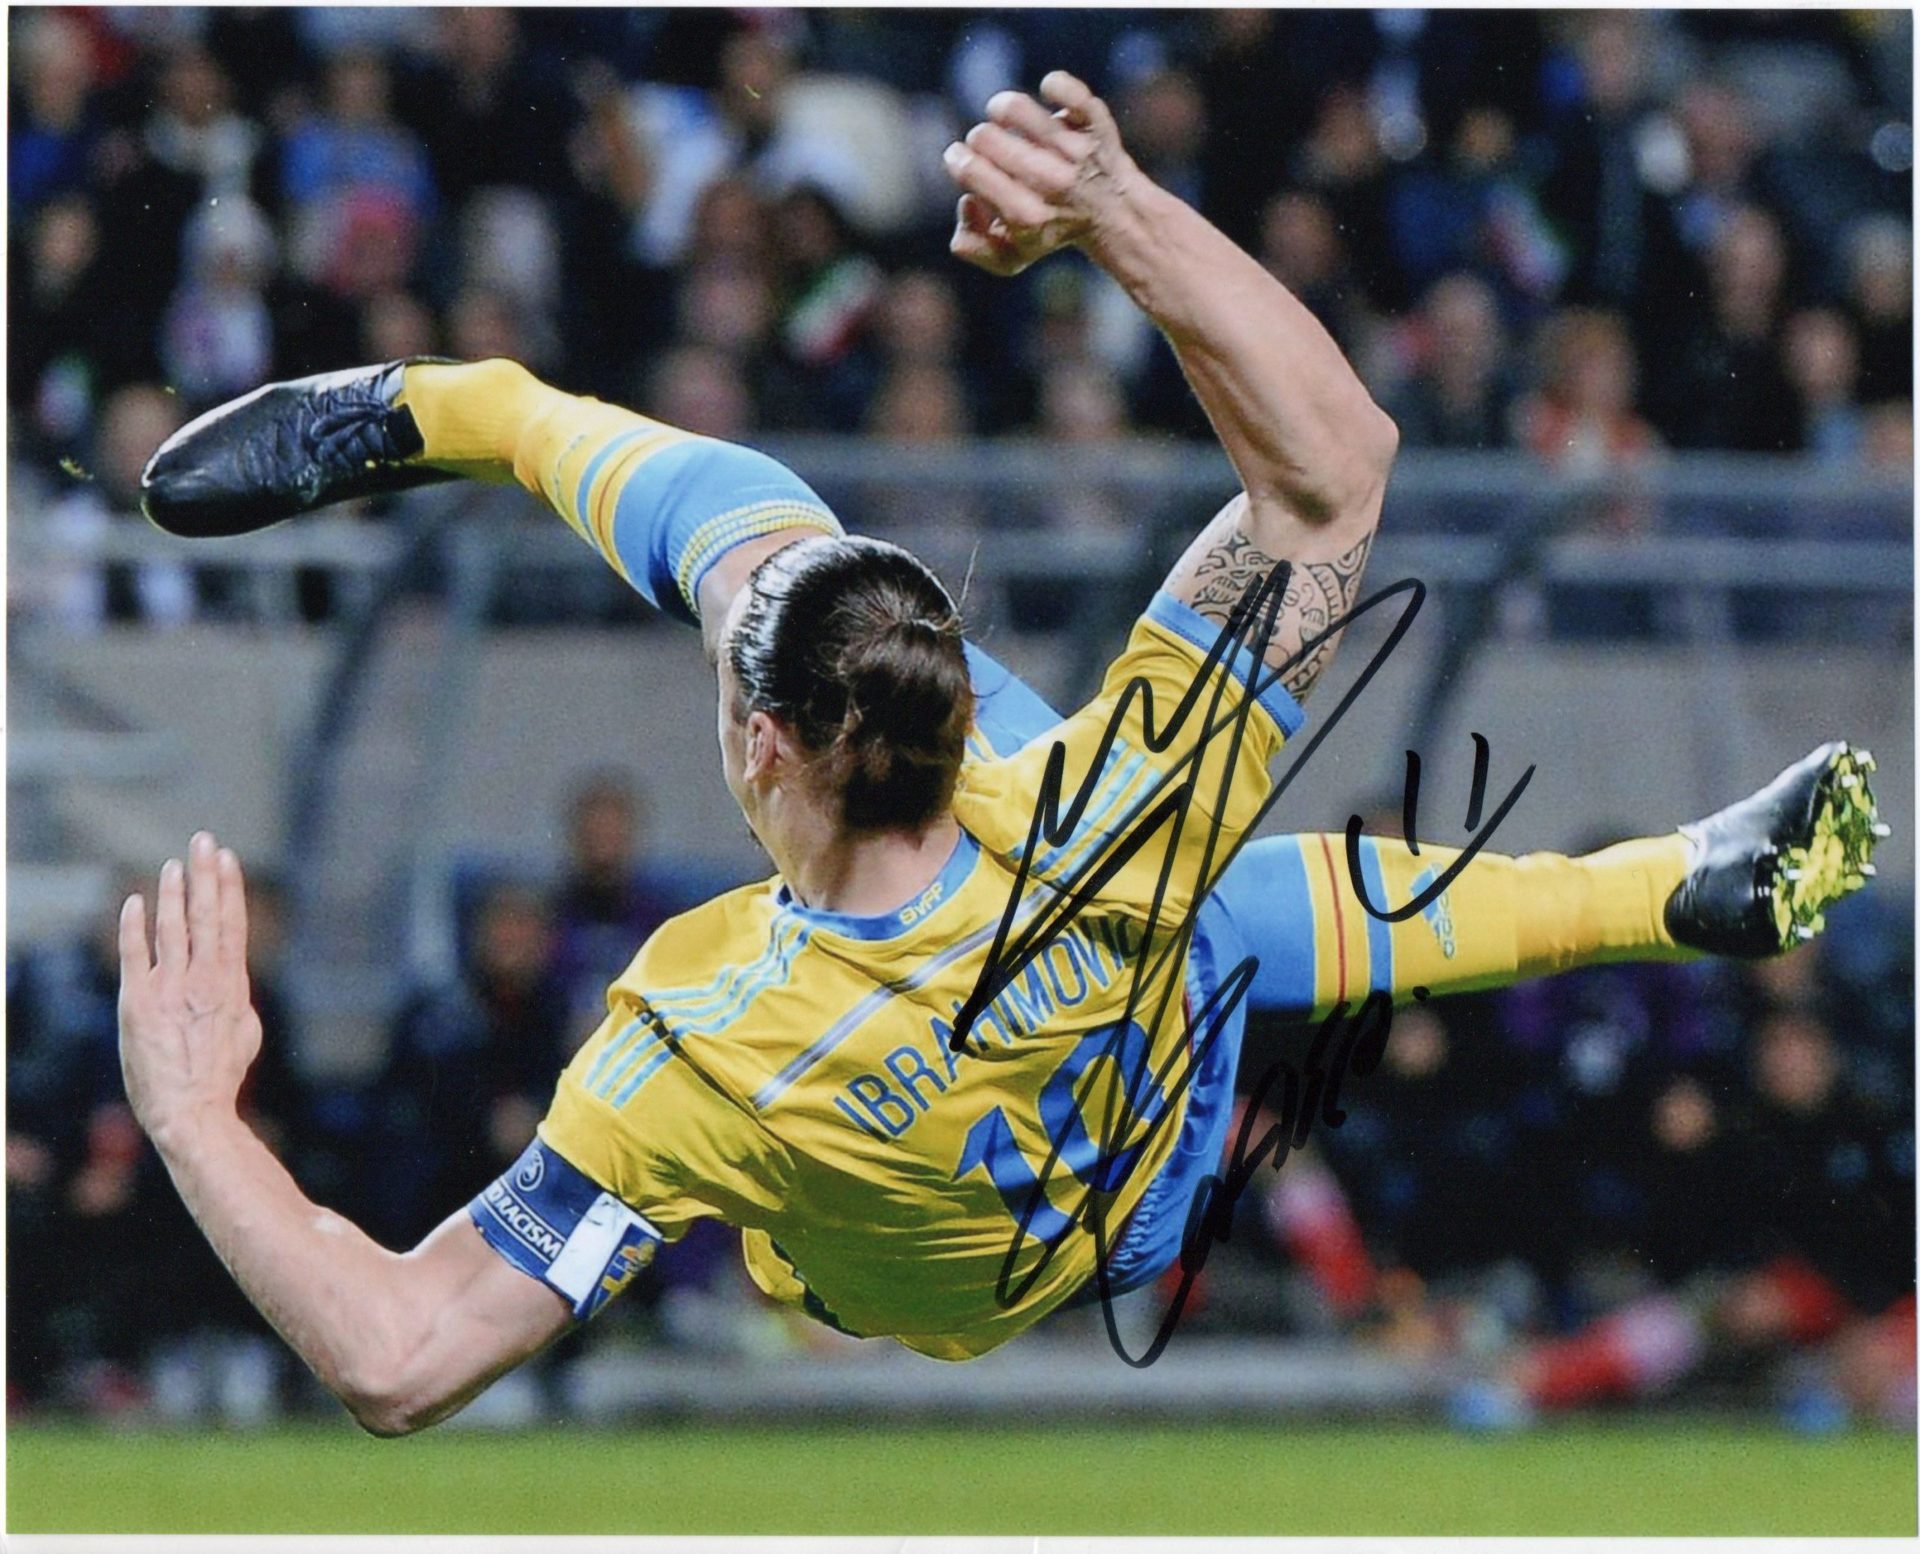 ibrahimovic overhead kick